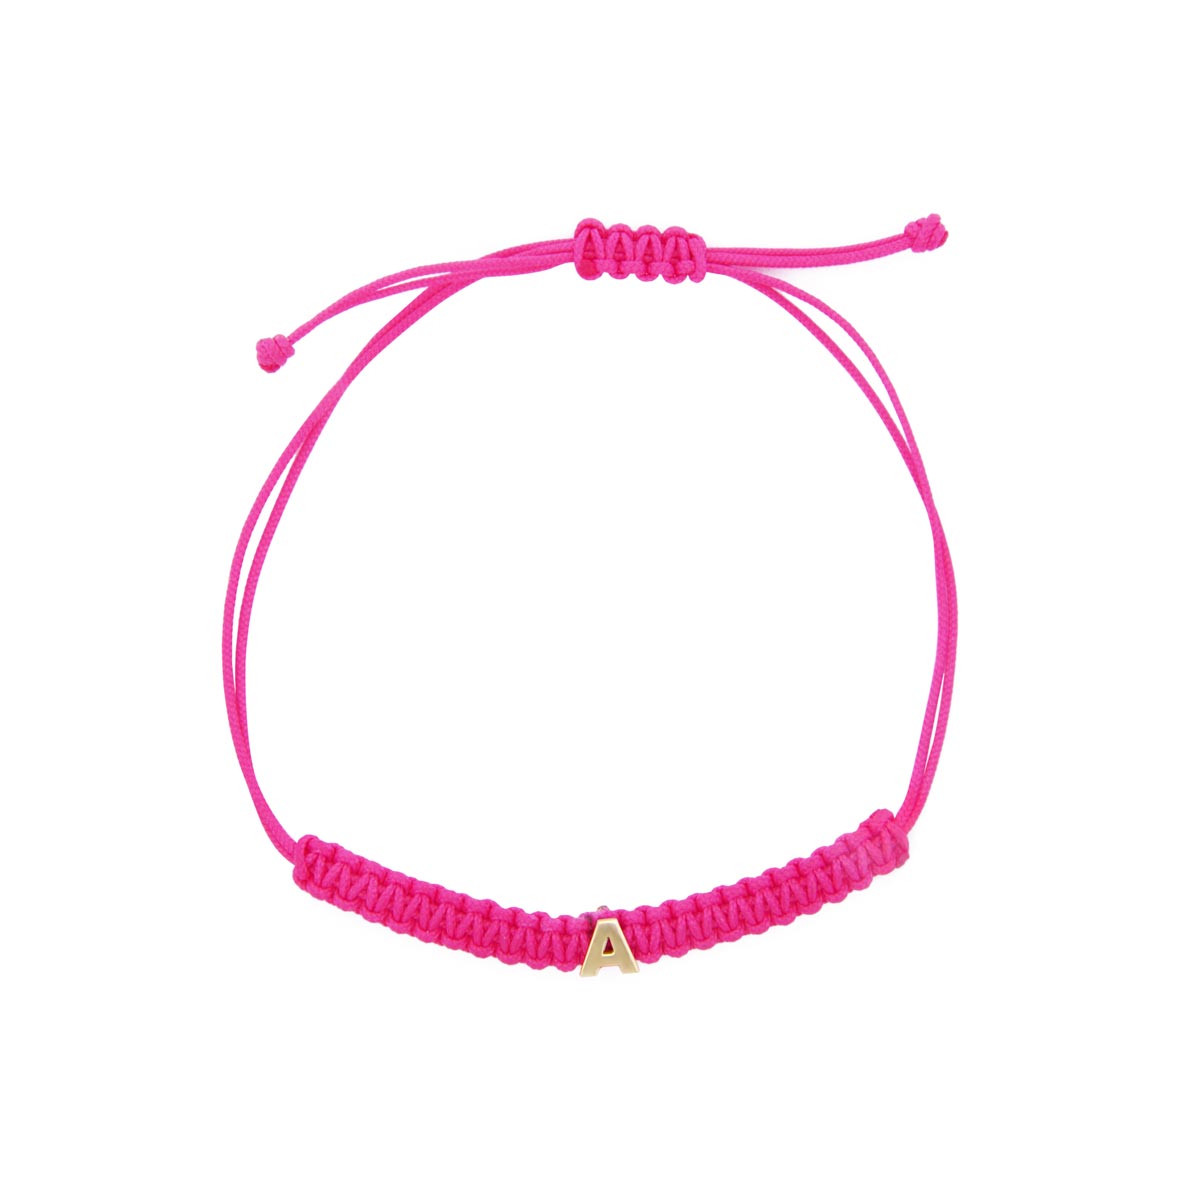 Bracelets - Pink fabric bracelet with letter - ORO18KT - 1 | Rue des Mille